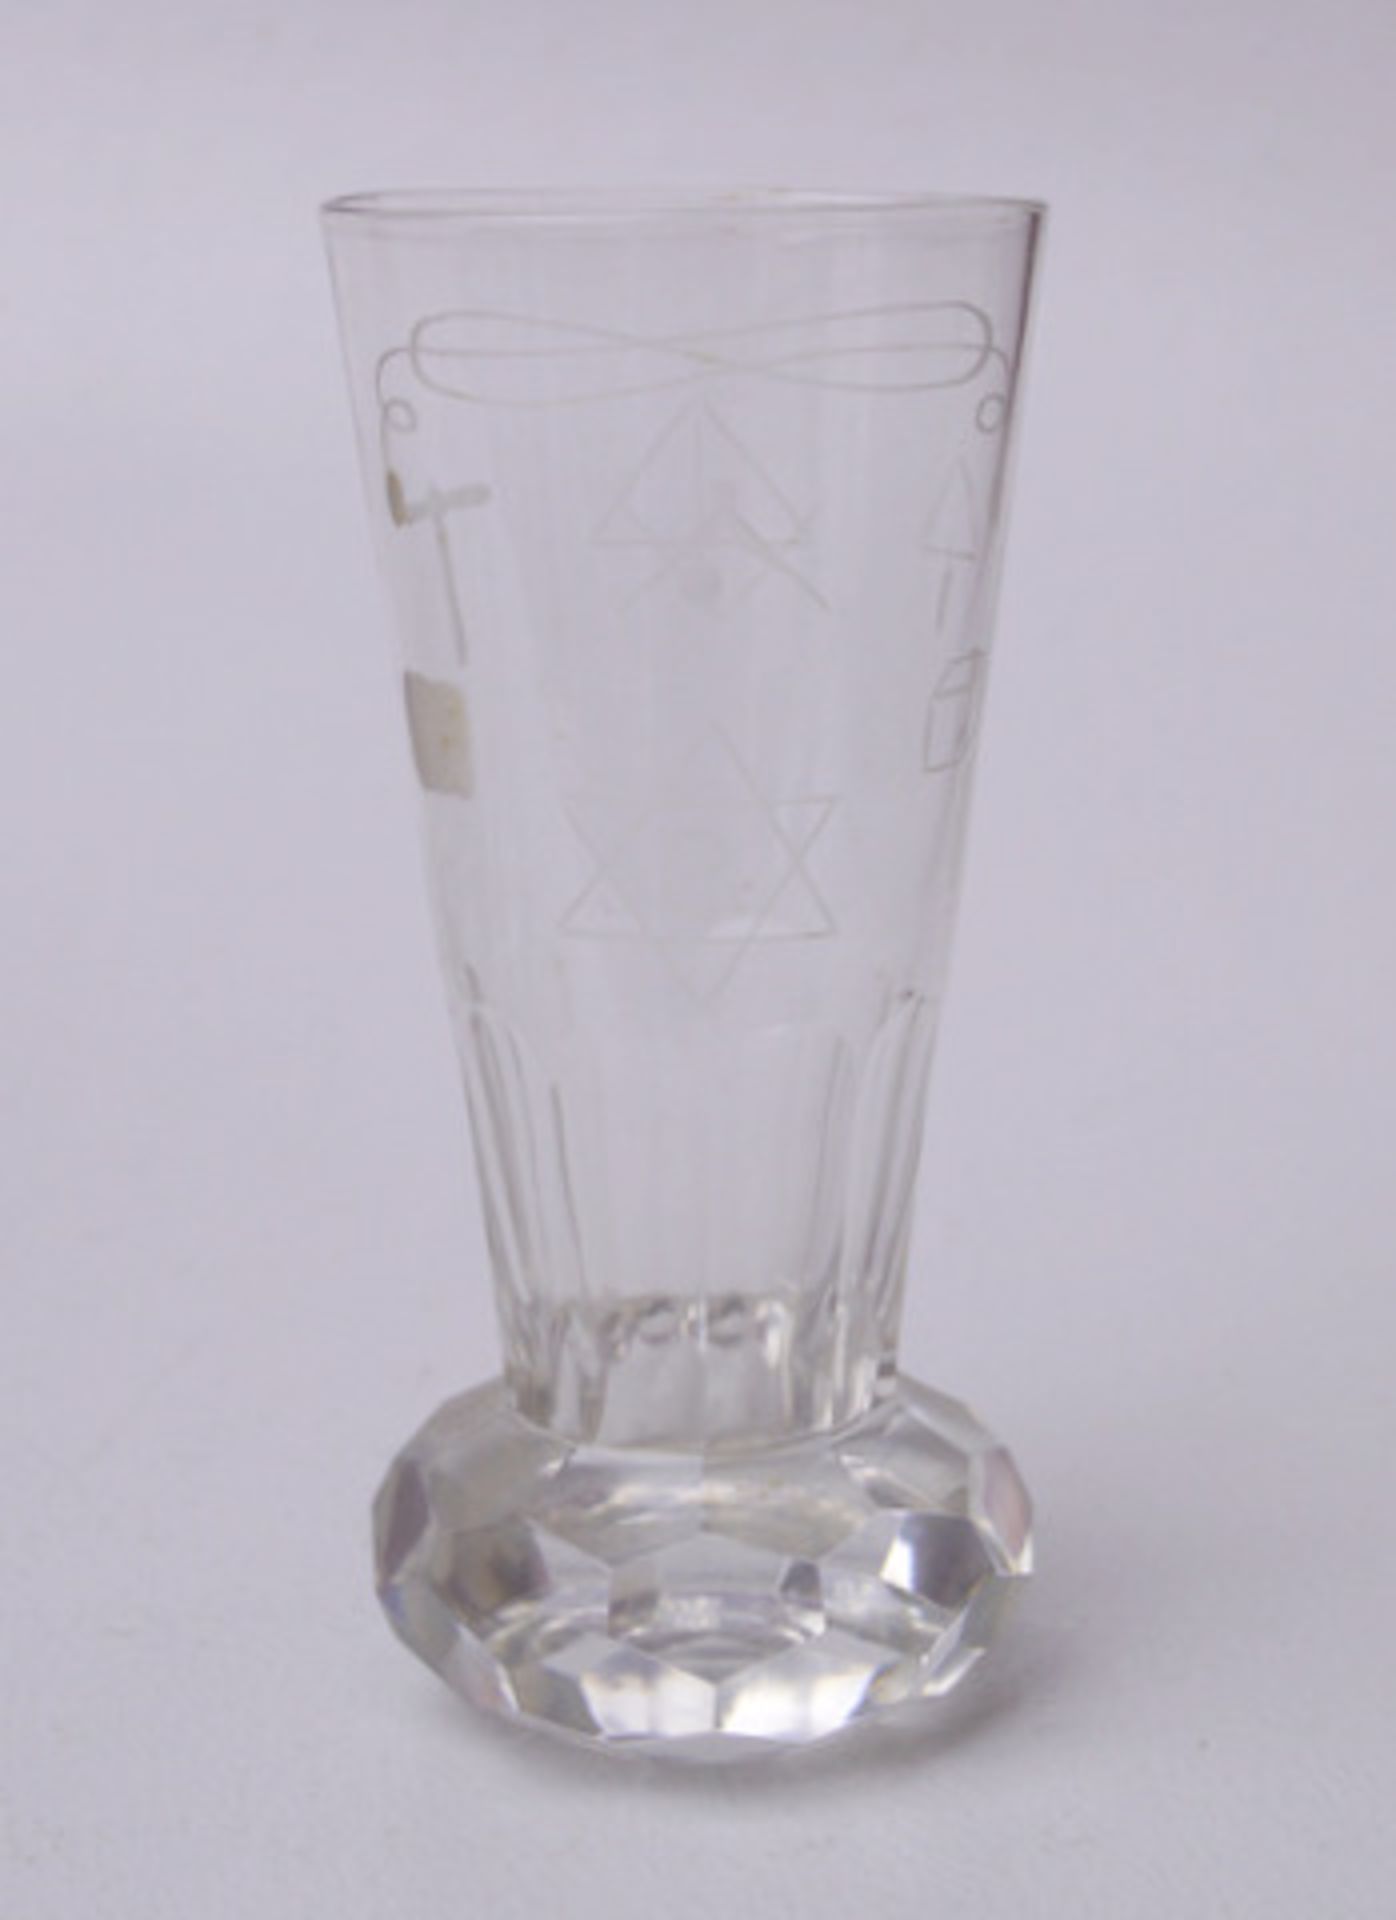 Folge von 7 Freimaurer-Gläsern, sog."Kanonen" Farbloses Glas mit gravierten Freimaurer-Motiven, - Bild 2 aus 2